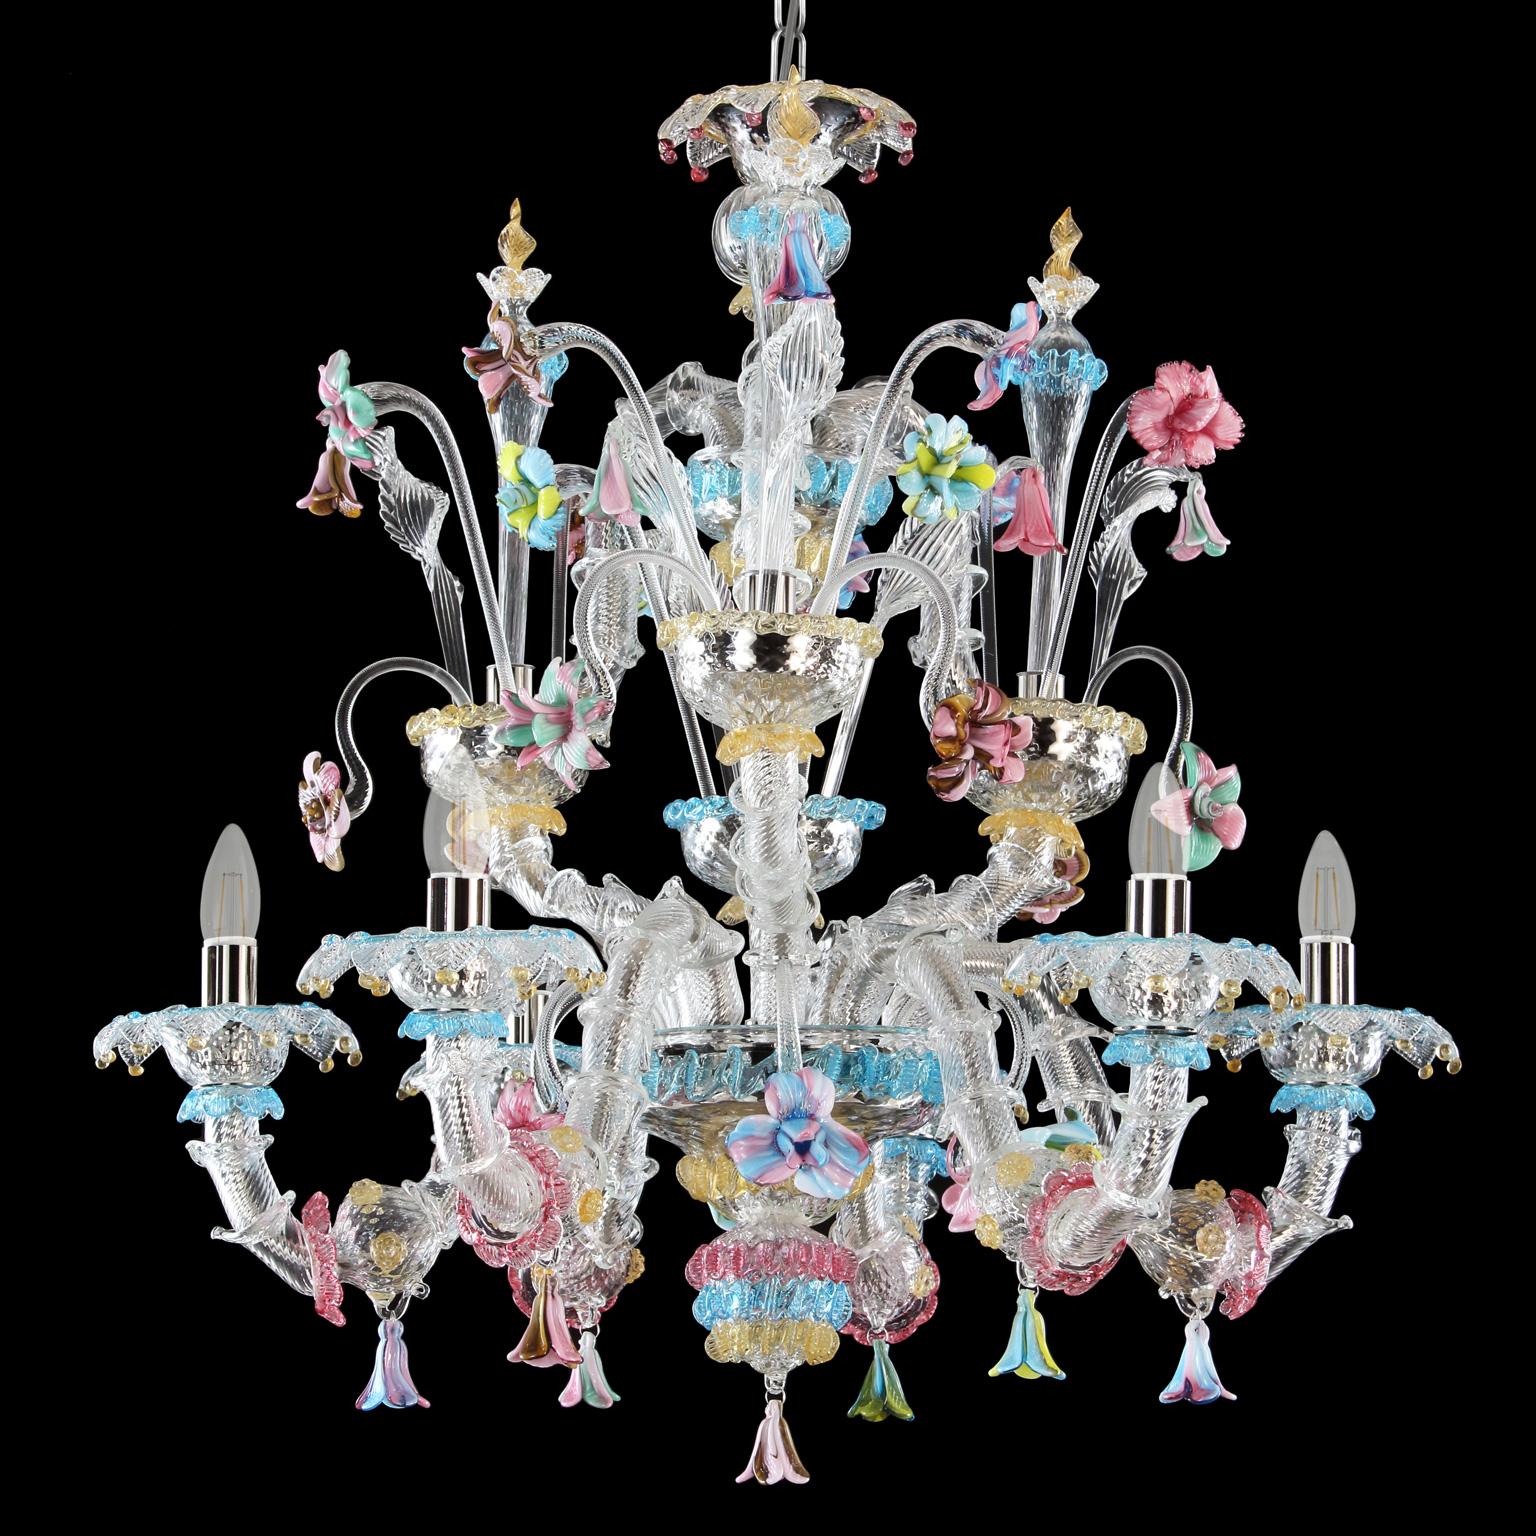 Lustre Rezzonico 6 bras, en cristal de Murano, riche de détails multicolores par MULTIFORME.
Ce lustre artistique en verre est une œuvre d'éclairage élégante et délicate, colorée avec des tons pastel. La structure est une combinaison de volumes bien